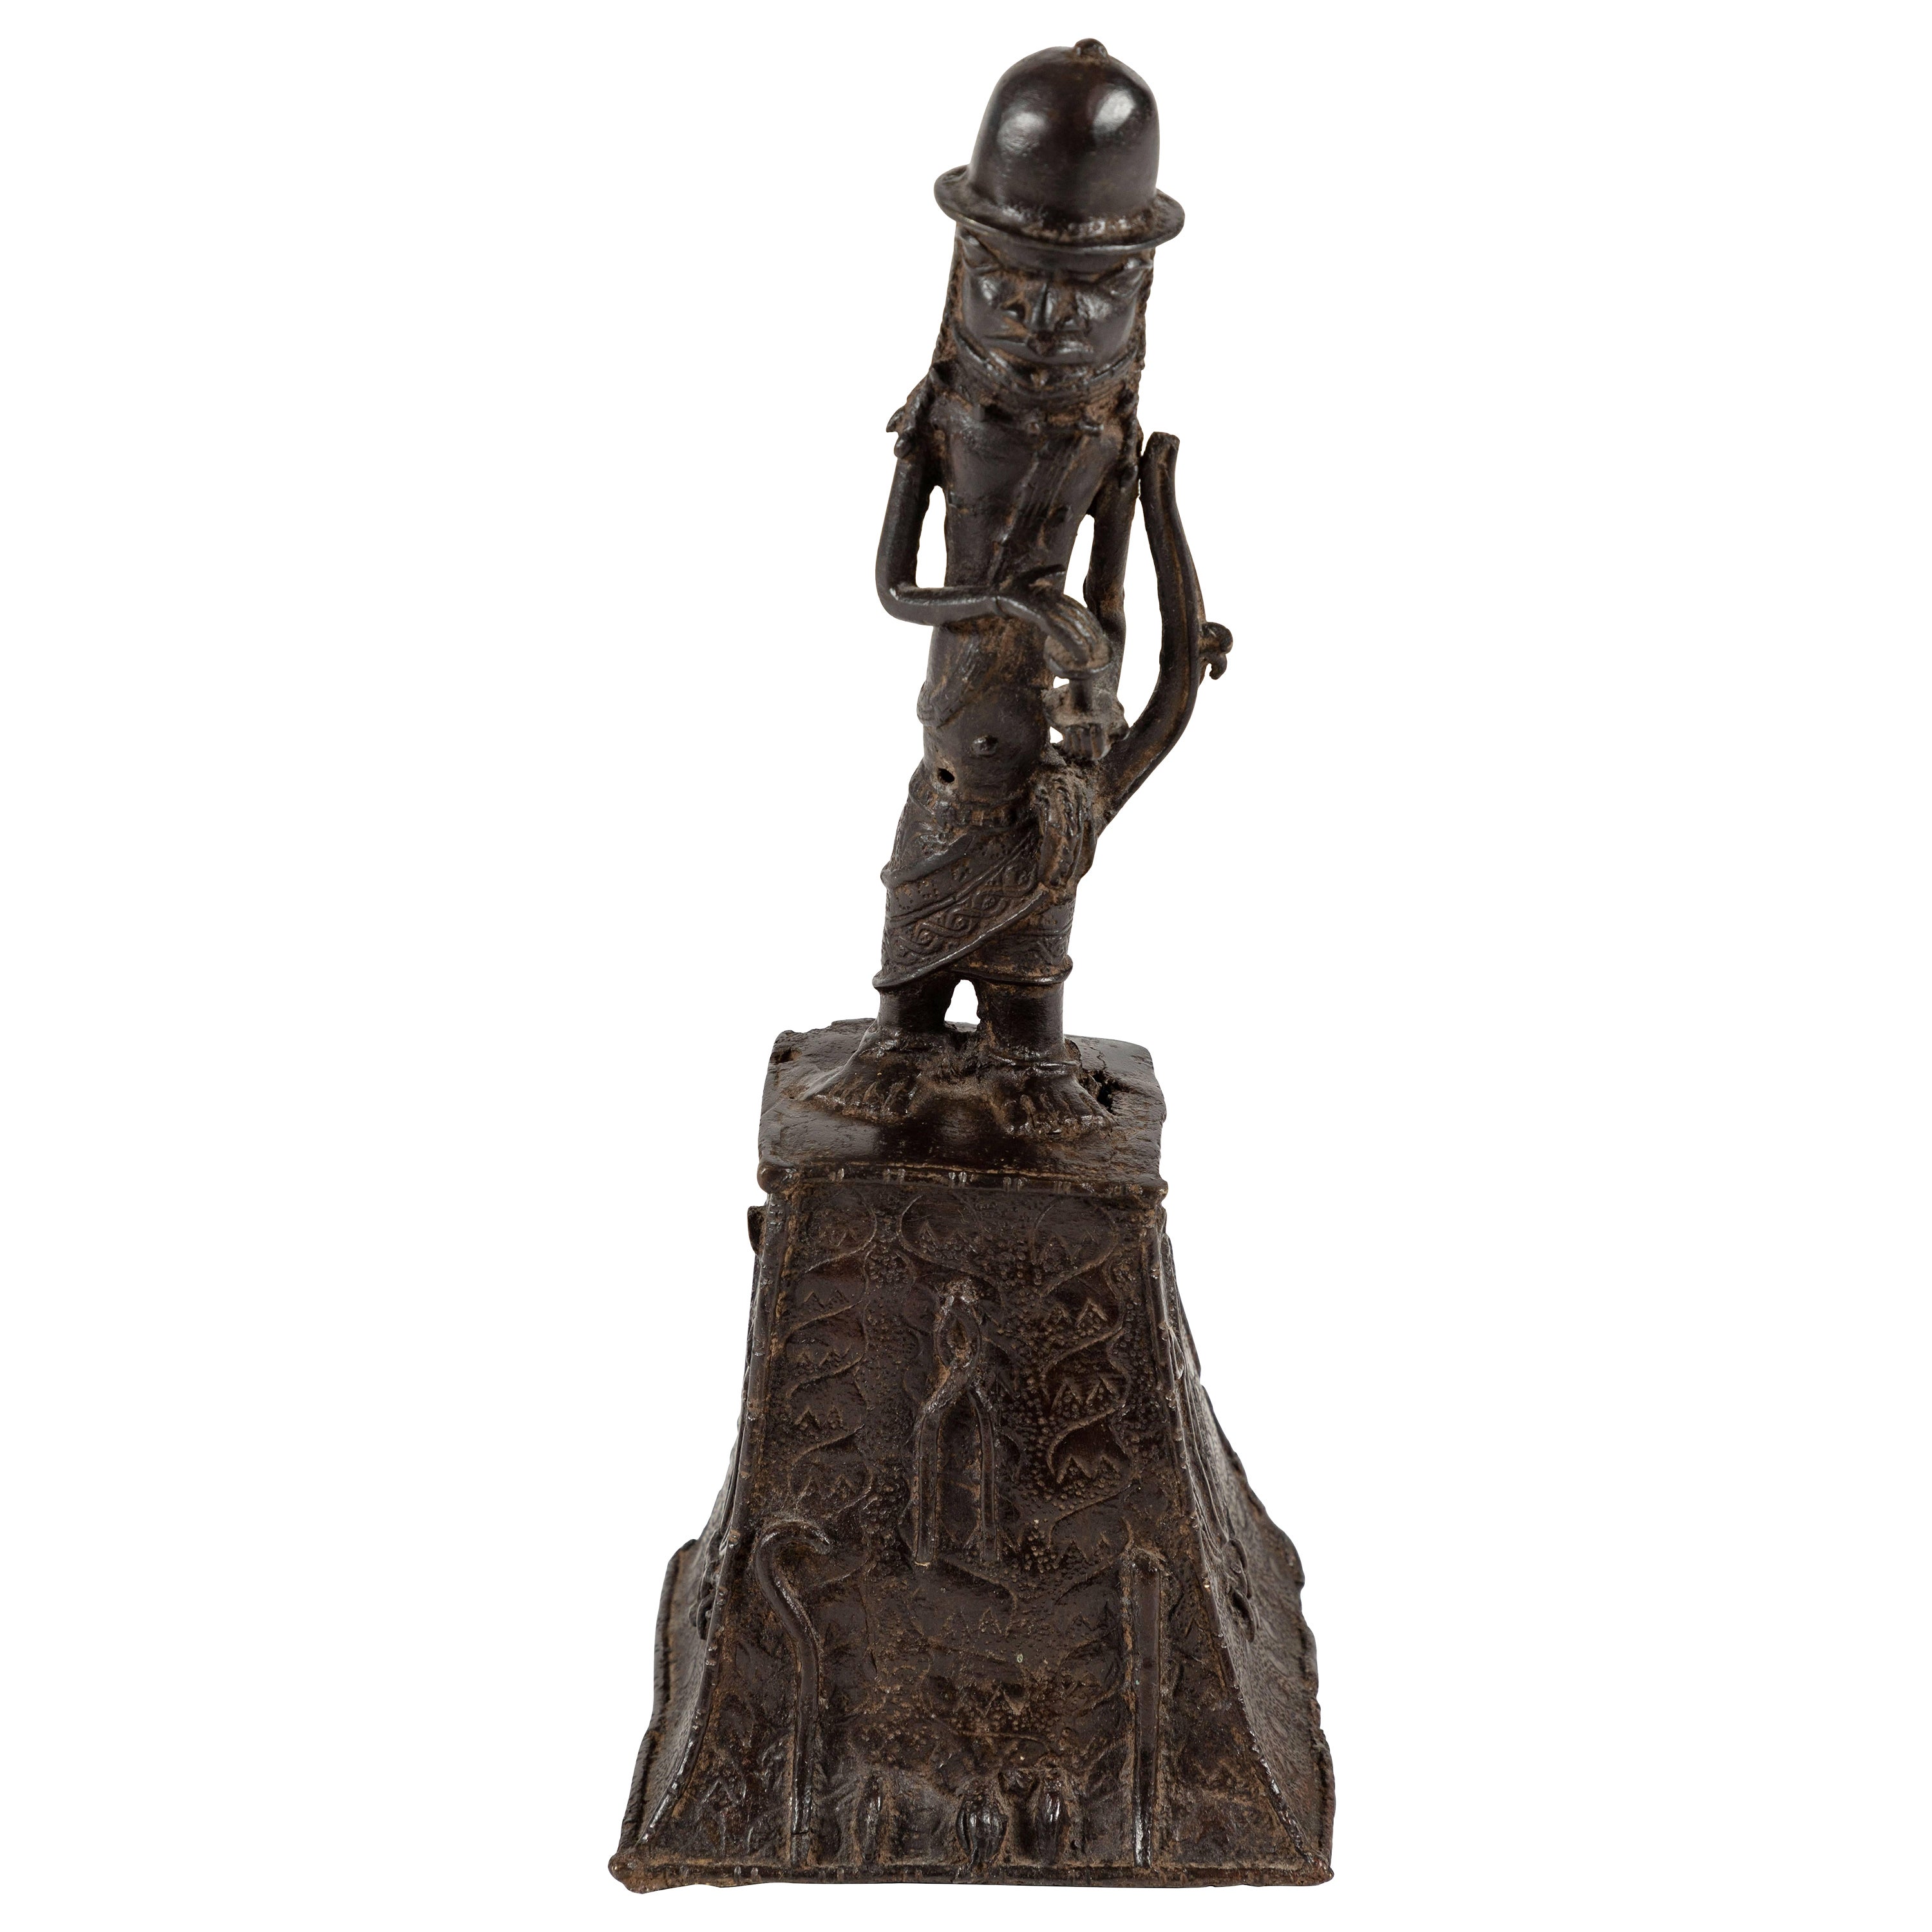 Benin Bronze Bell Sculpture Depicting an Oba